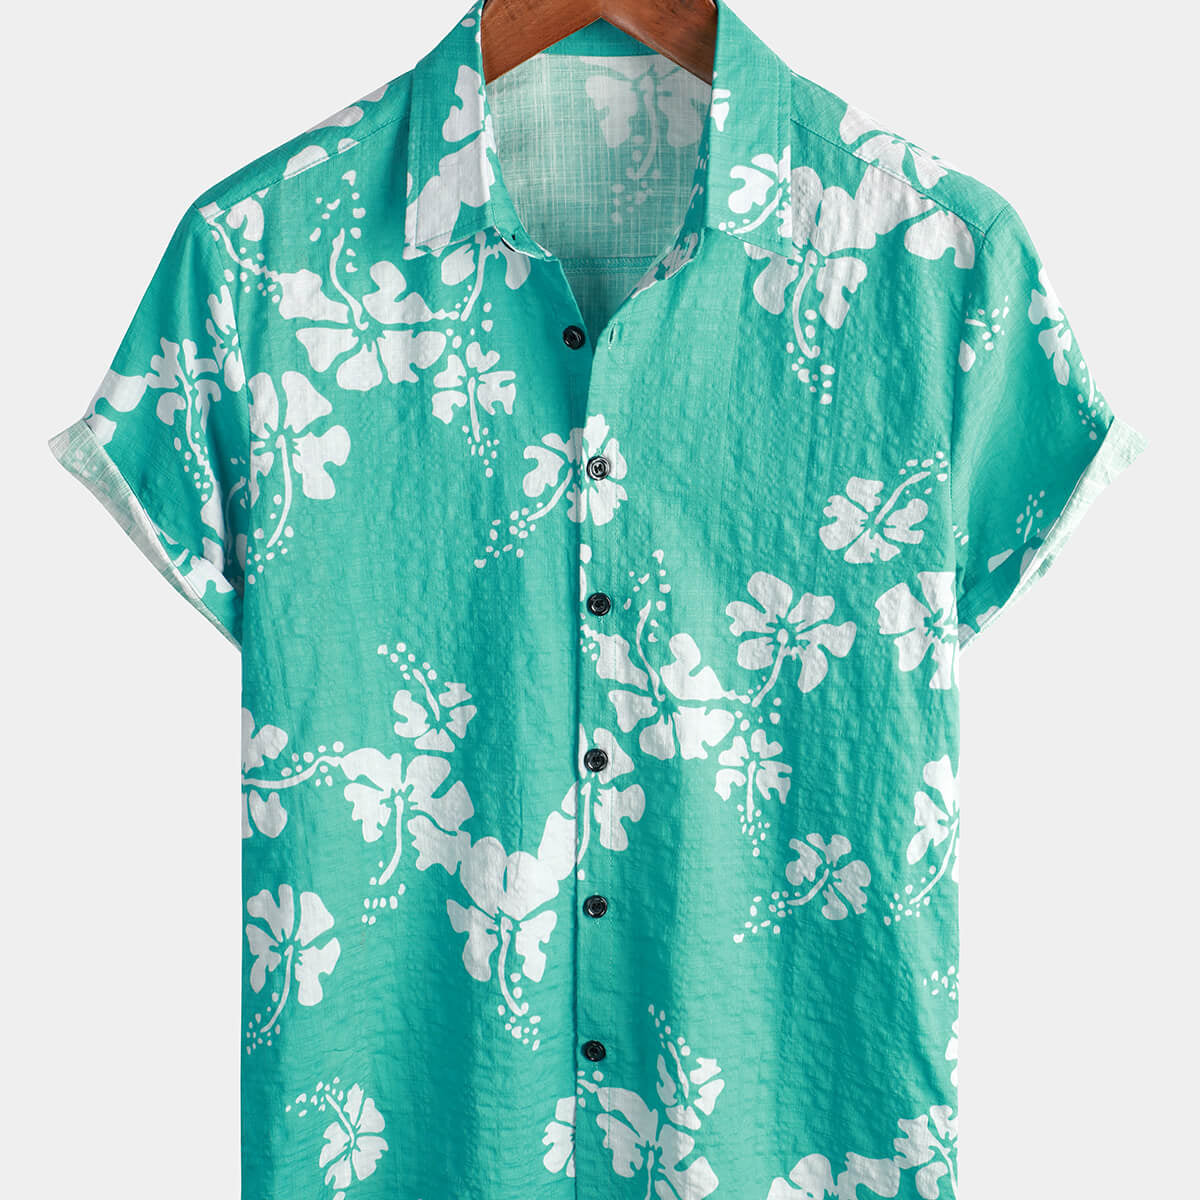 Chemise tropicale rétro à manches courtes pour homme boutonnée de couleur vert clair avec motifs floraux hawaïens idéale pour la plage estivale